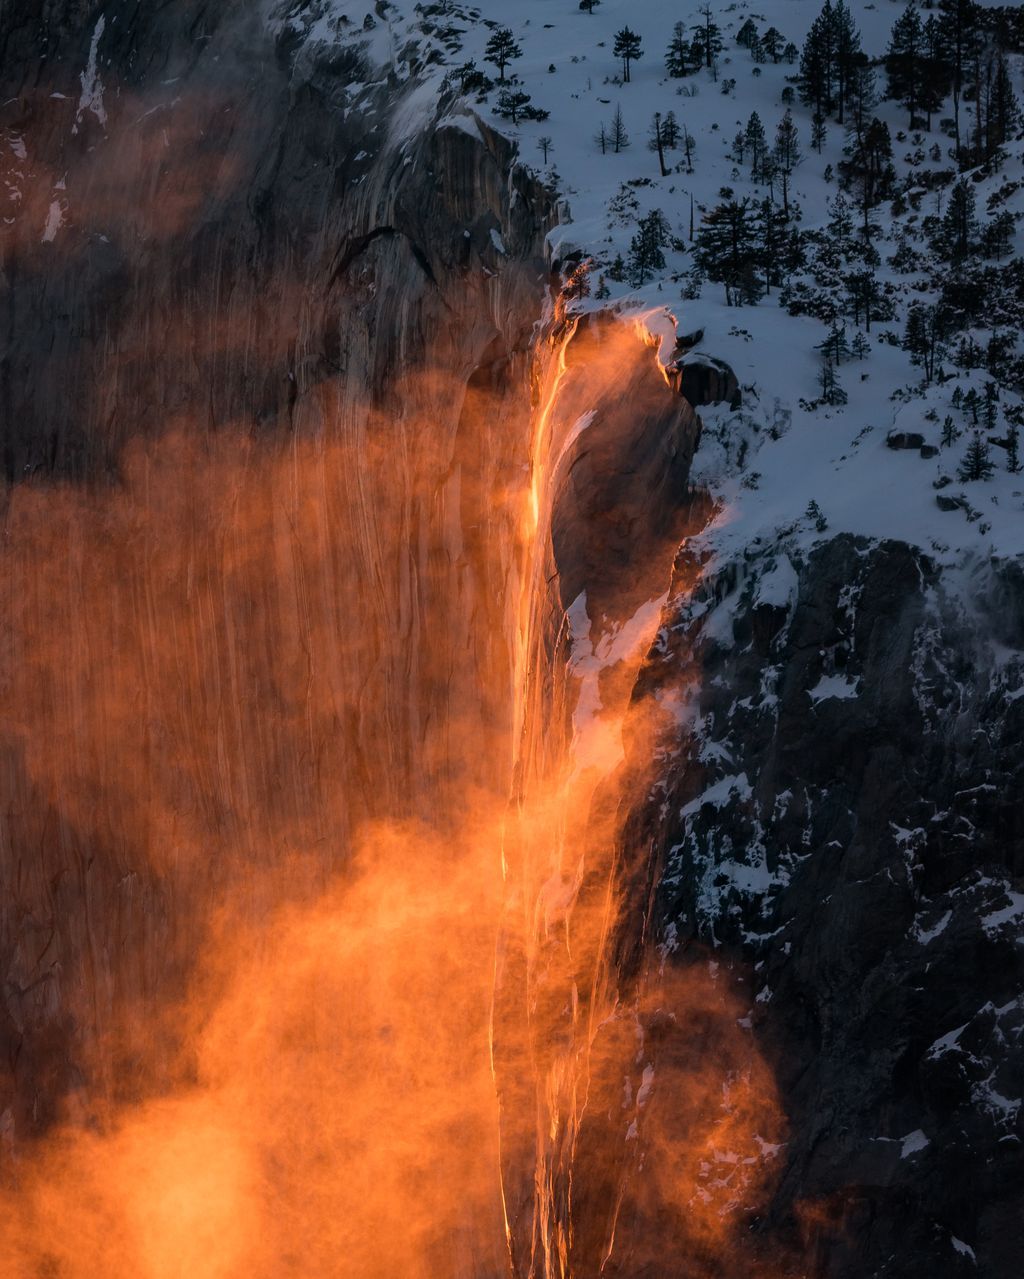 i07“Thác lửa” nổi tiếng ở Công viên Quốc gia Yosemite là một hiện tượng quang học tự nhiên xảy ra khi Mặt Trời chiếu ánh sáng của mình vào Thác nước Horsetail và tạo nên màu sắc cam như vậy. Ảnh: Daniel Yee.